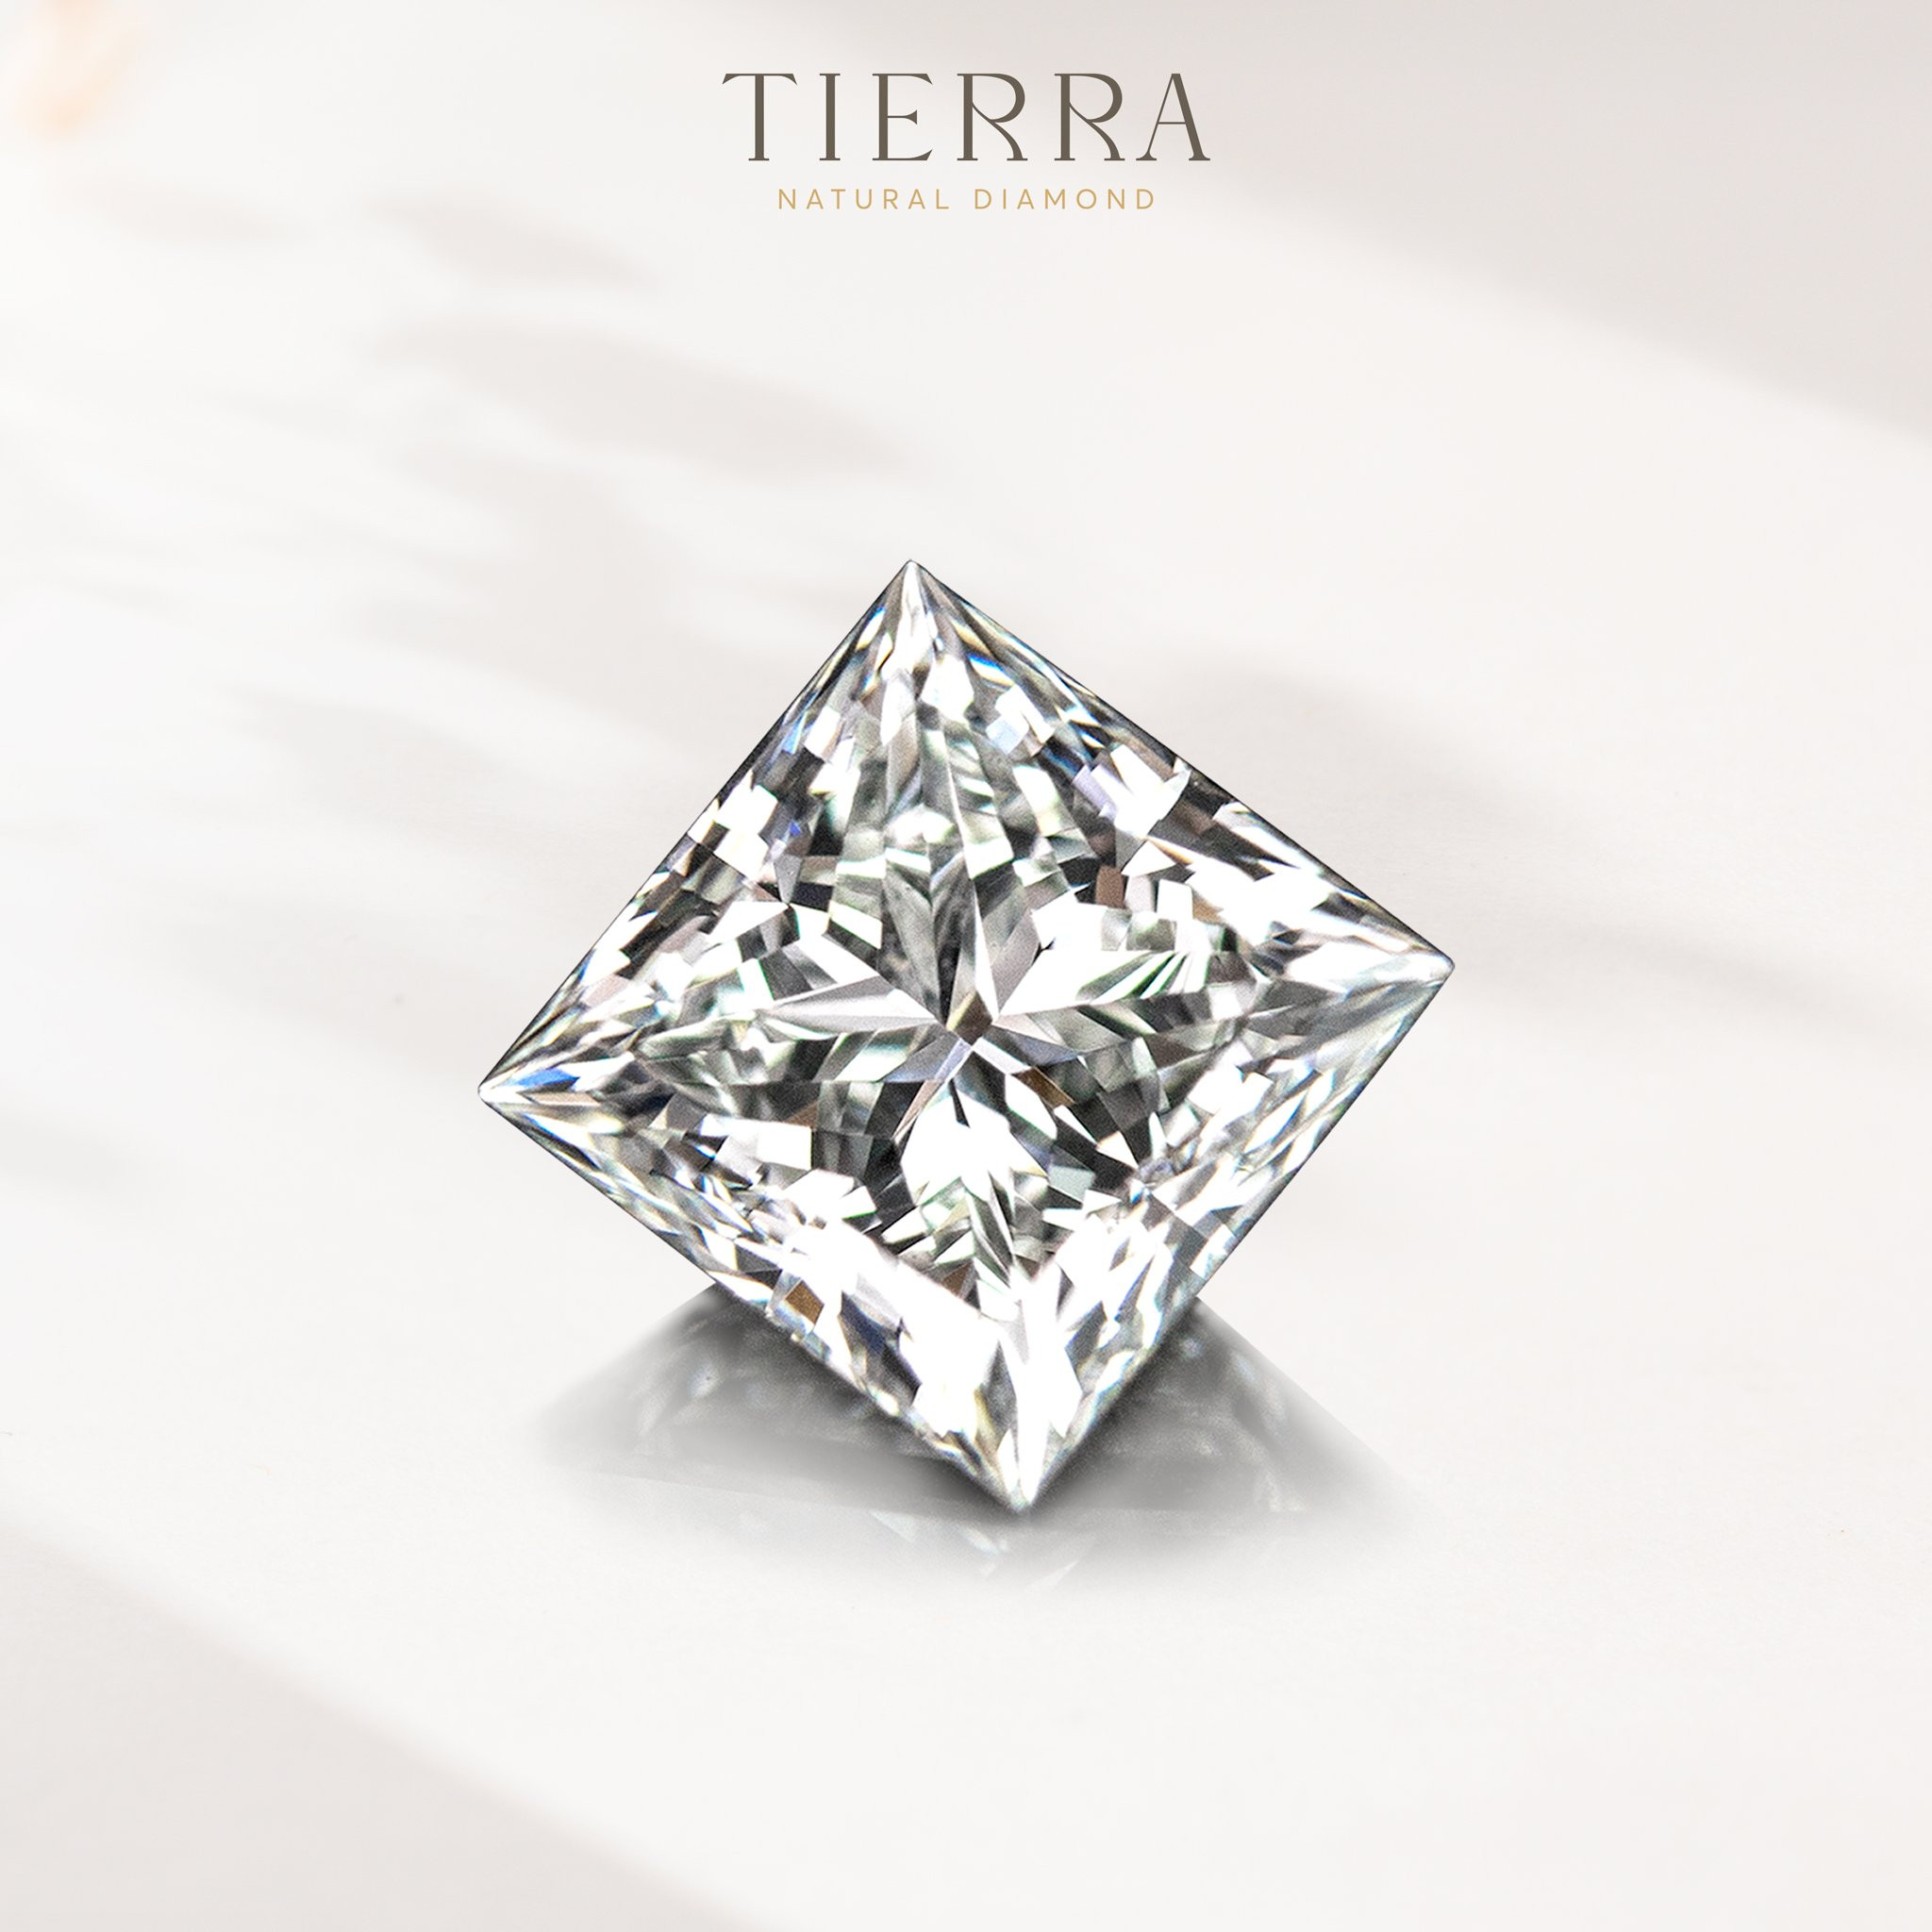 Bảng giá kim cương tại Tierra Diamond - Khẳng định giá cả luôn đi cùng - 1